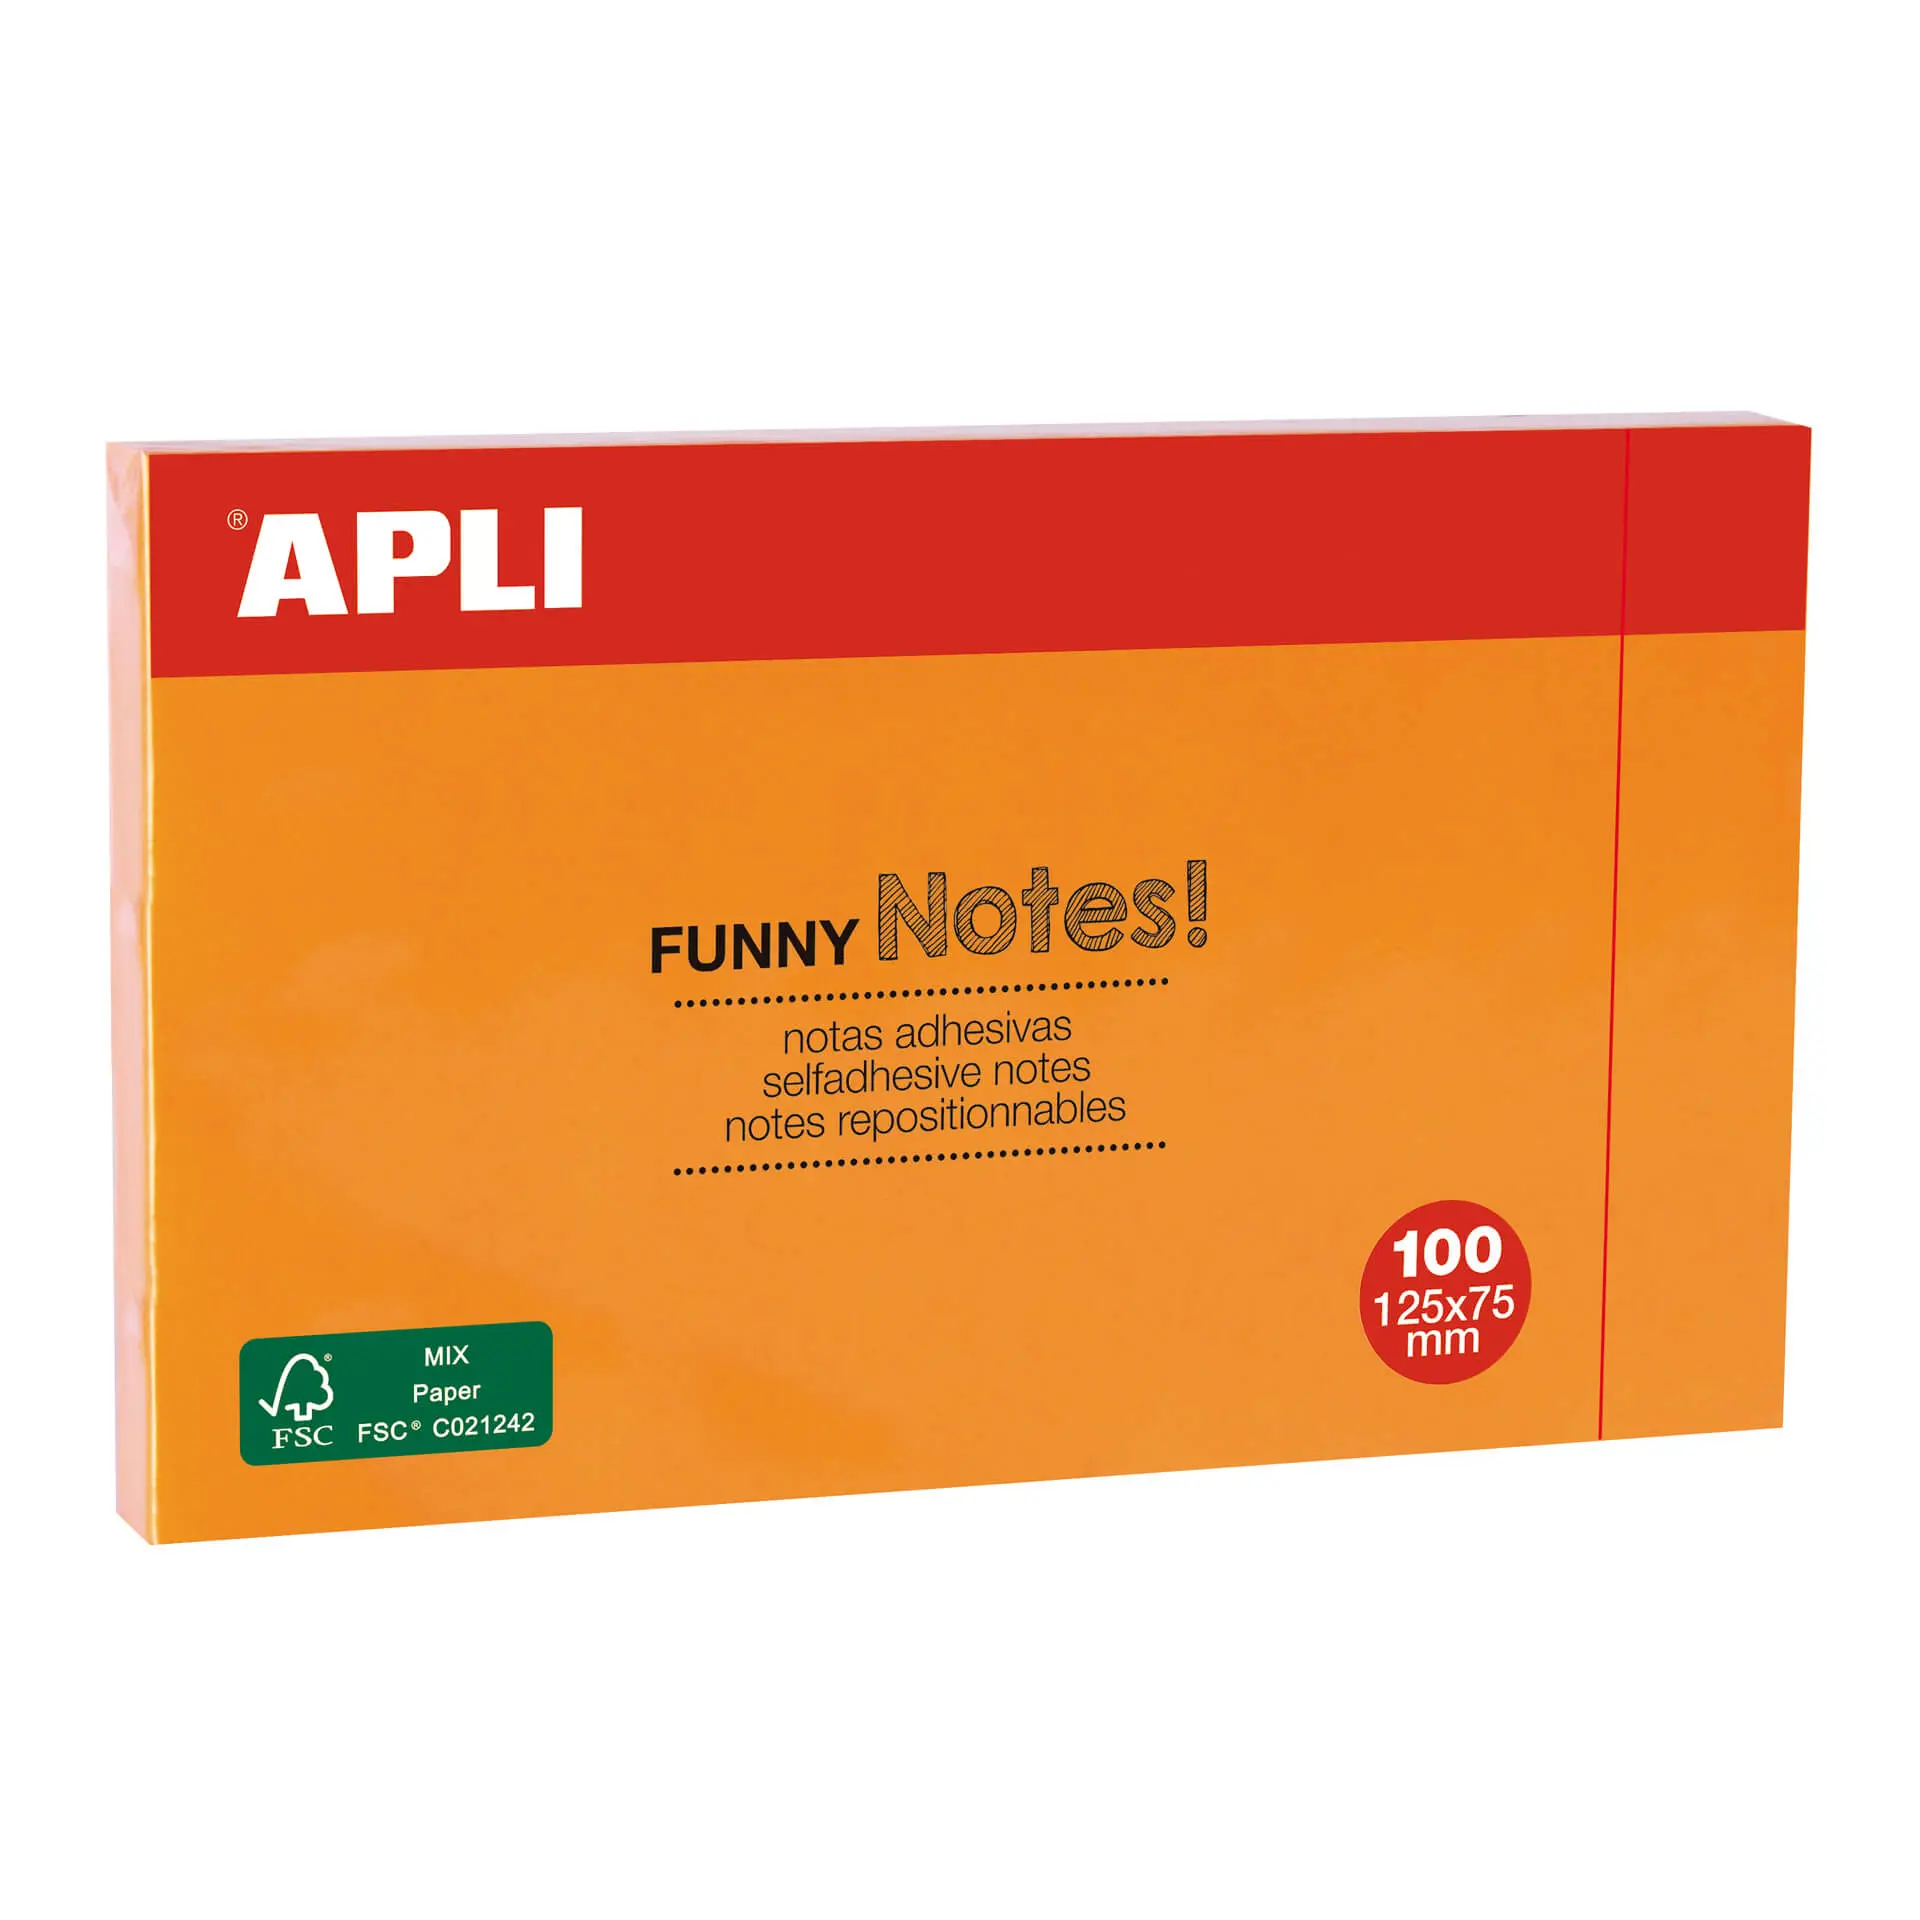 Apli Notas Adhesivas Funny 125x75mm - Bloc de 100 Hojas - Adhesivo de Calidad - Color Naranja Fluore